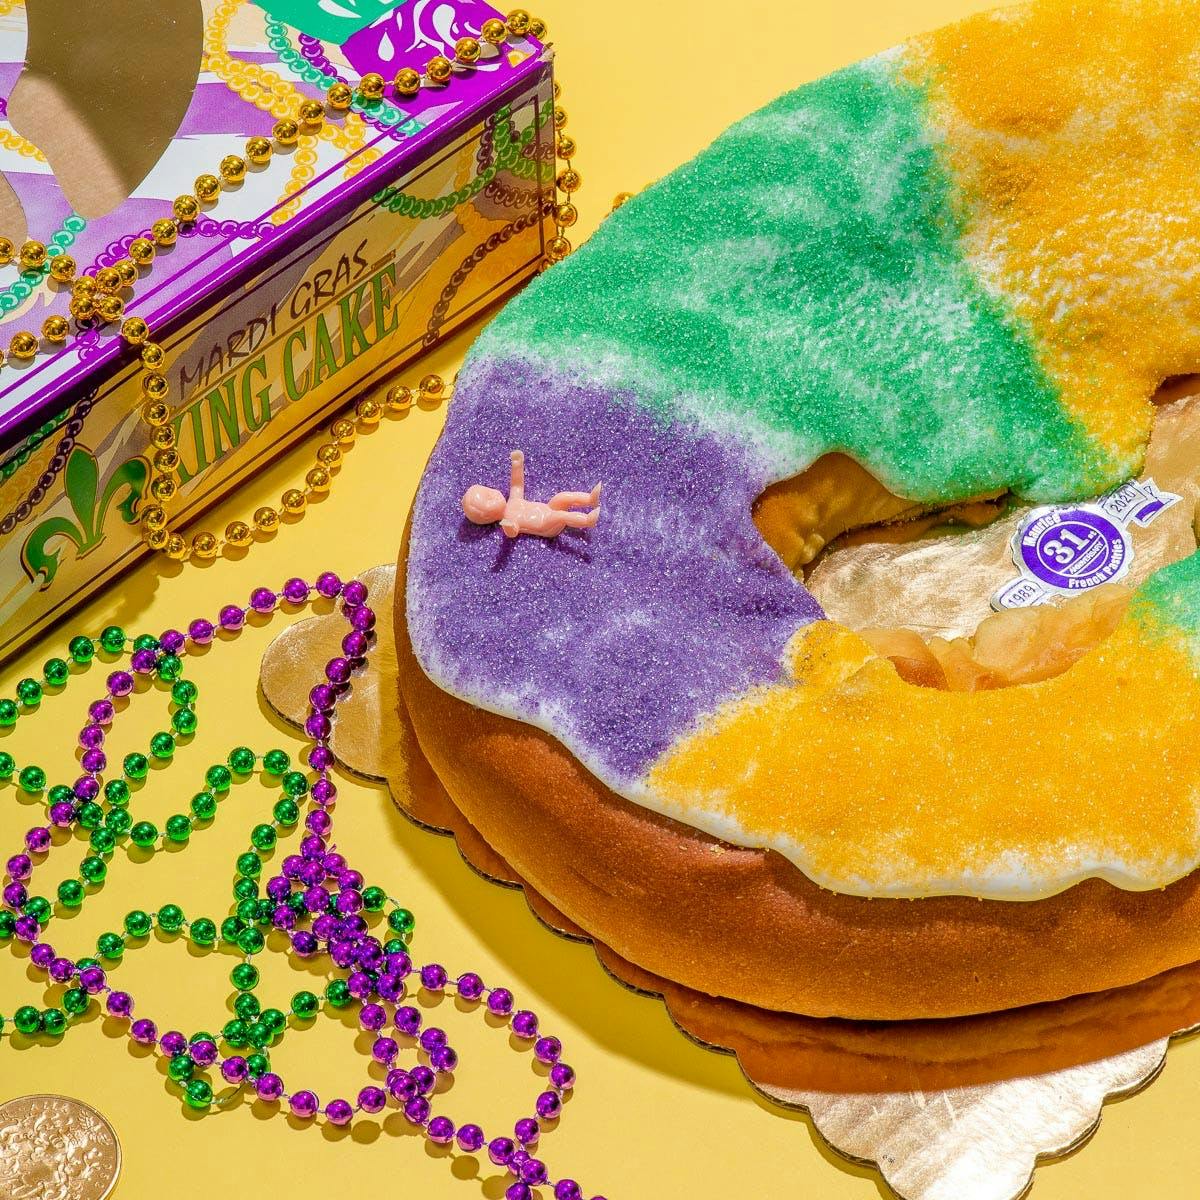 Keto King Cakes now available | louisianaradionetwork.com